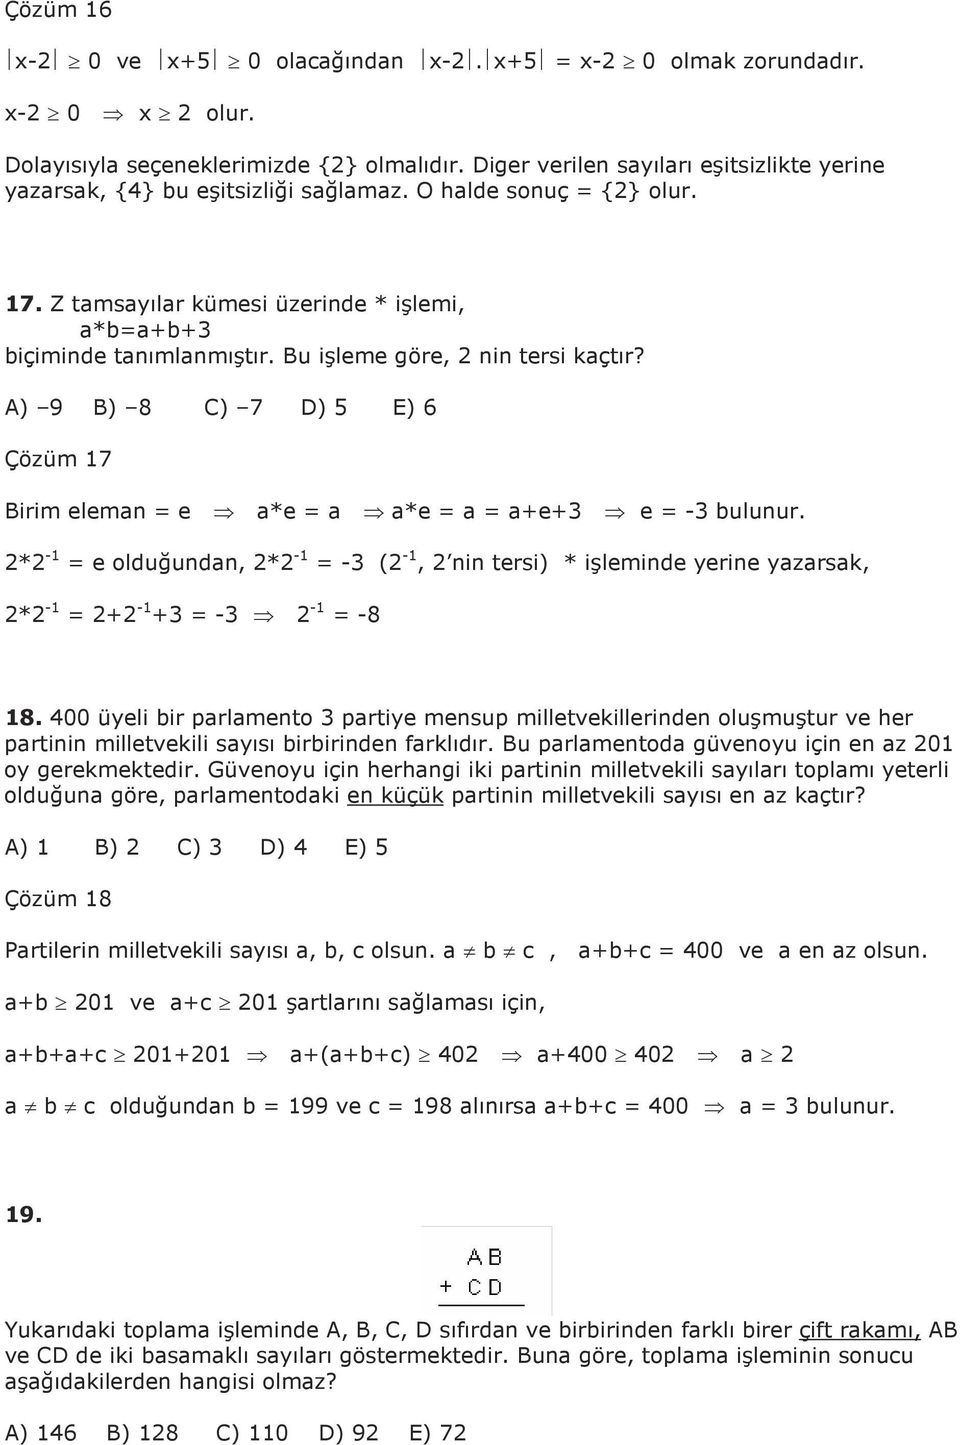 A) 9 B) 8 C) 7 D) E) 6 Çözüm 7 Birim eleman e a*e a a*e a a+e+ e - bulunur. * - e olduğundan, * - - ( -, nin tersi) * işleminde yerine yazarsak, * - + - + - - -8 8.